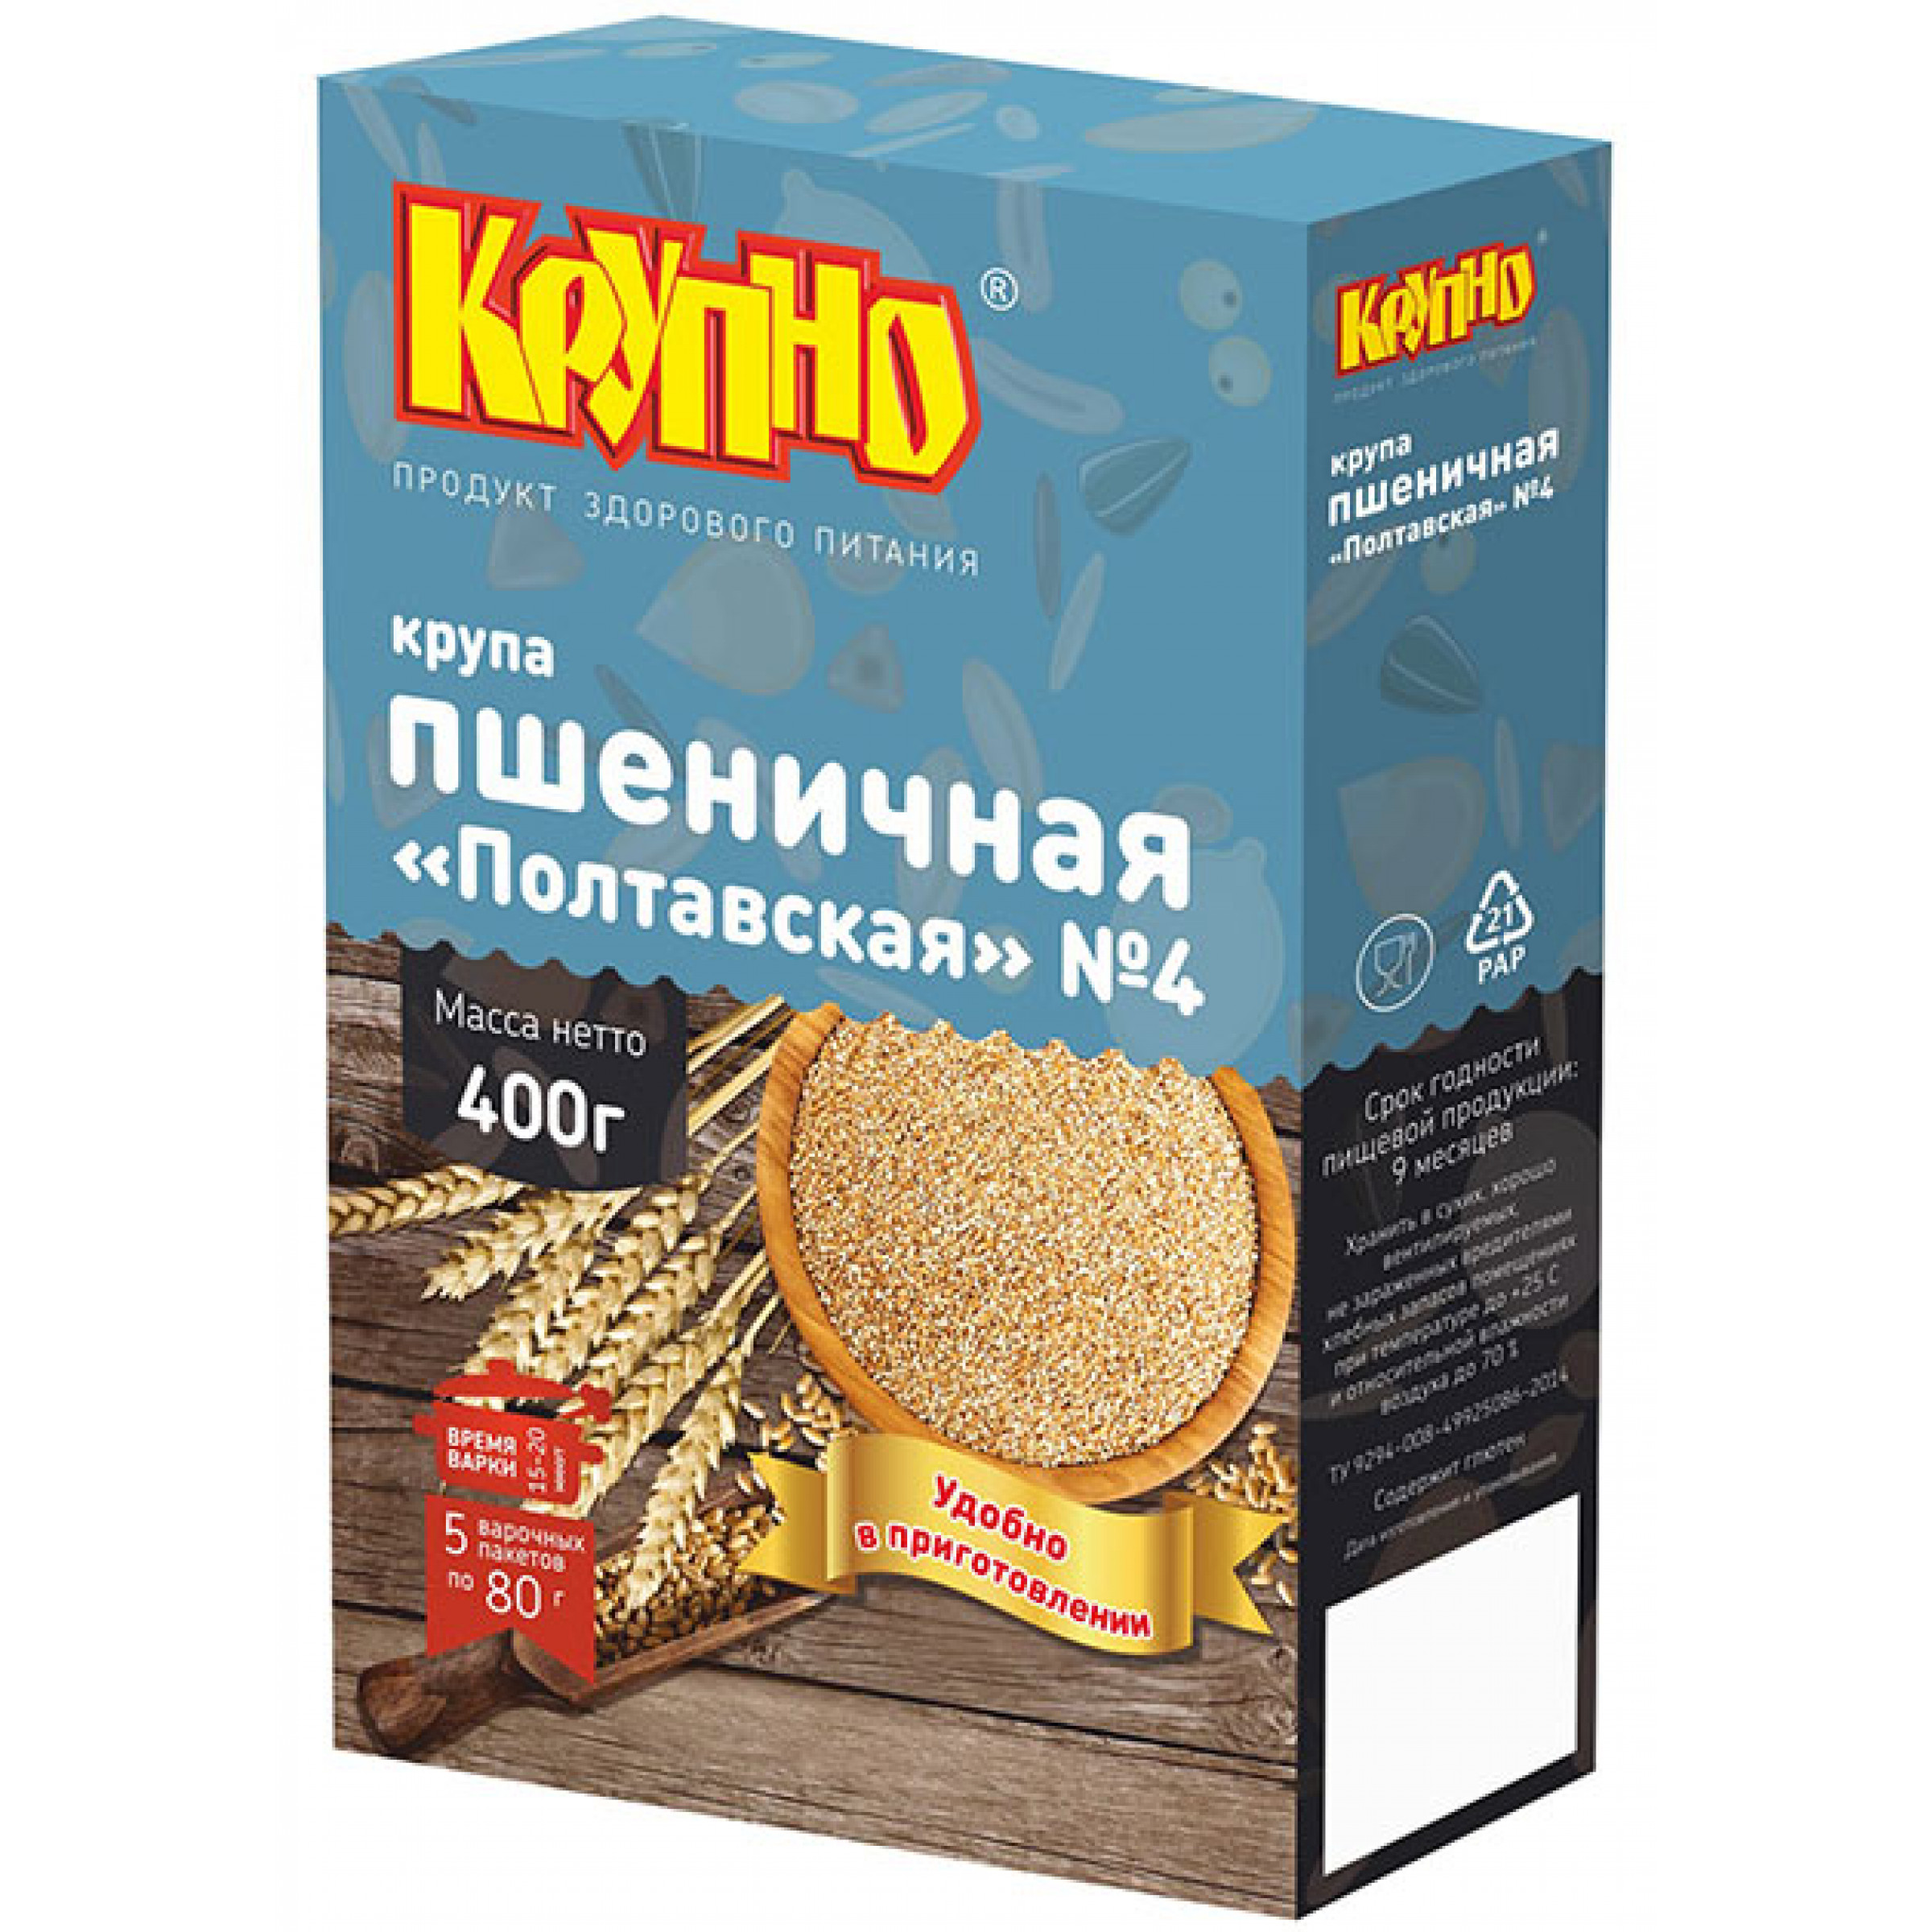 Пшеничая крупа Полтавская в варочных пакетах Крупно, 5 * 80 г